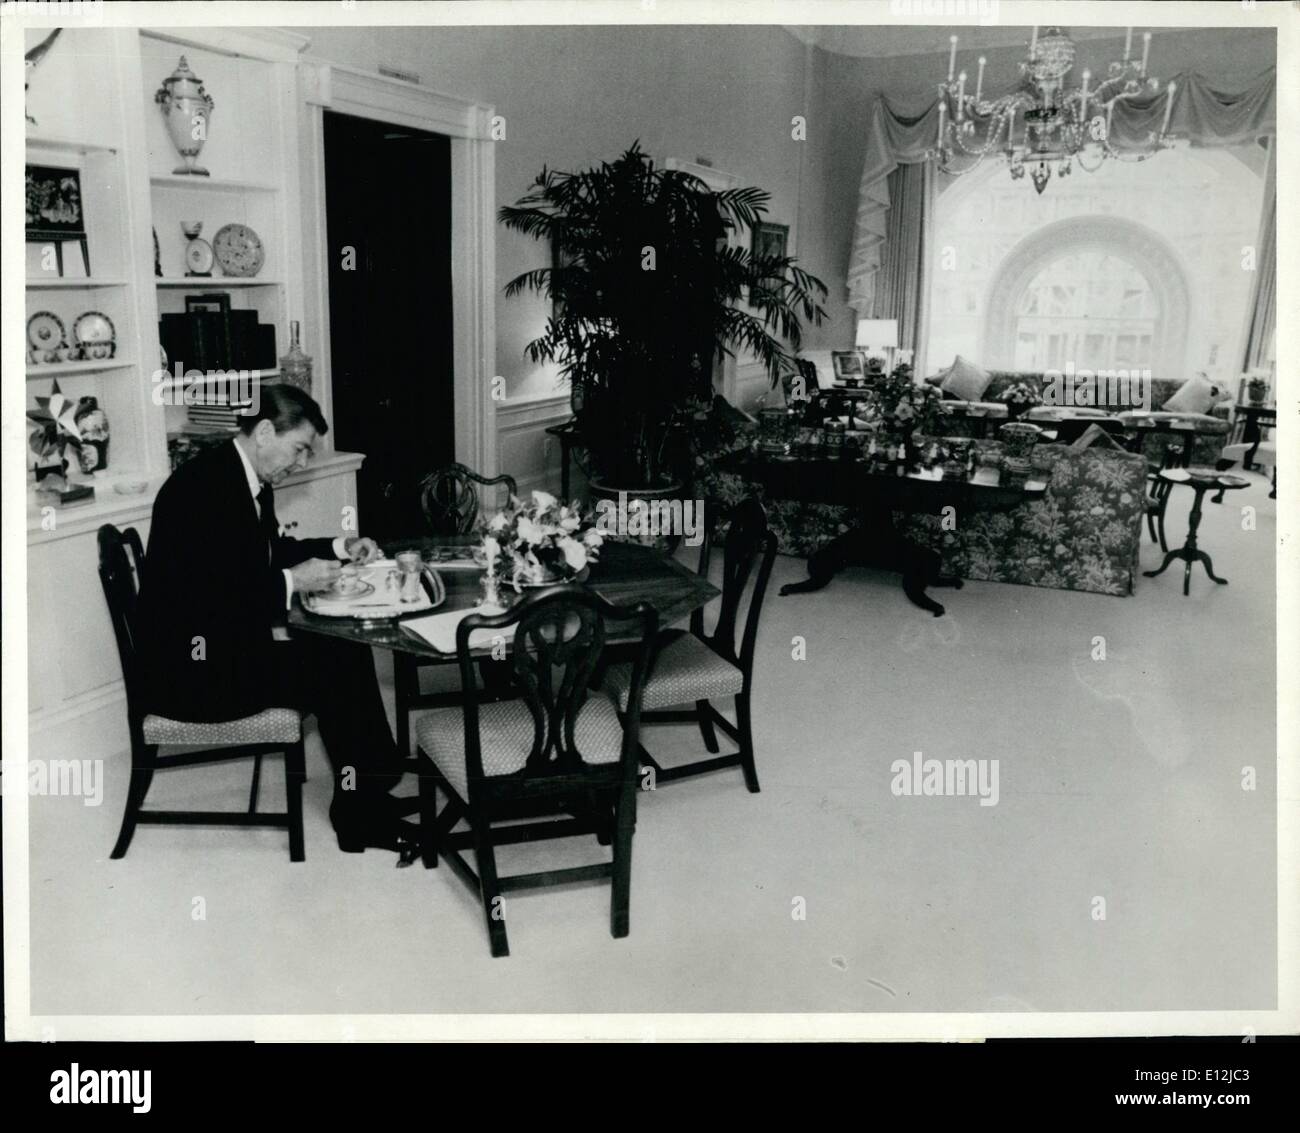 24. Februar 2012 - konsolidierte Nachrichten Bilder.: Reagan isst Mittagessen: Washington D.C. Präsident Raegan zeigt sich in der Residenz Wohnzimmer Essen. Diese Bilder wurden durch das Weiße Haus am 18. November veröffentlicht. Stockfoto